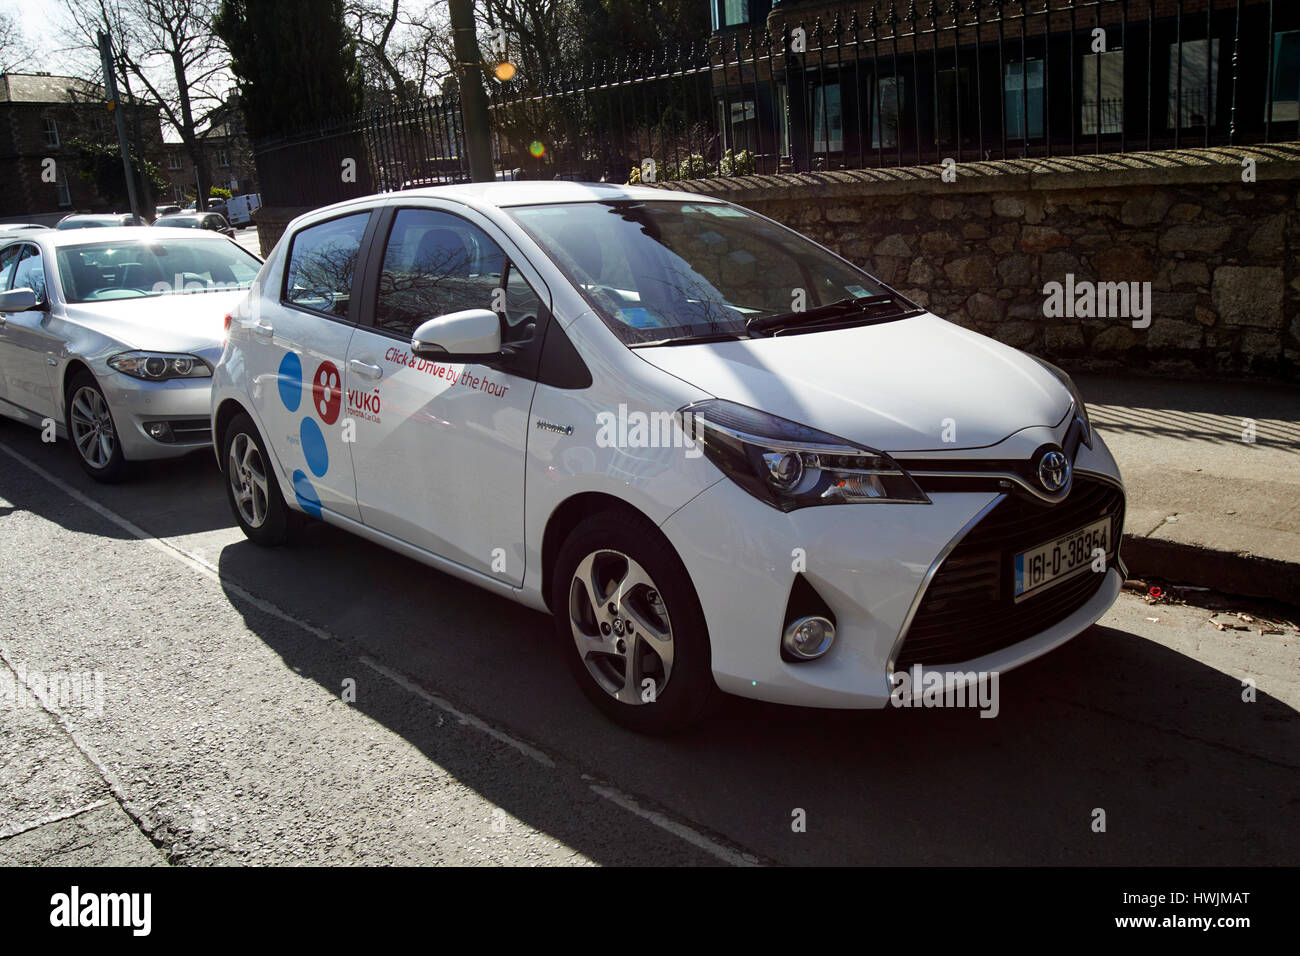 Toyota Yaris yuko car club location de véhicule hybride horaire Dublin République d'Irlande Banque D'Images